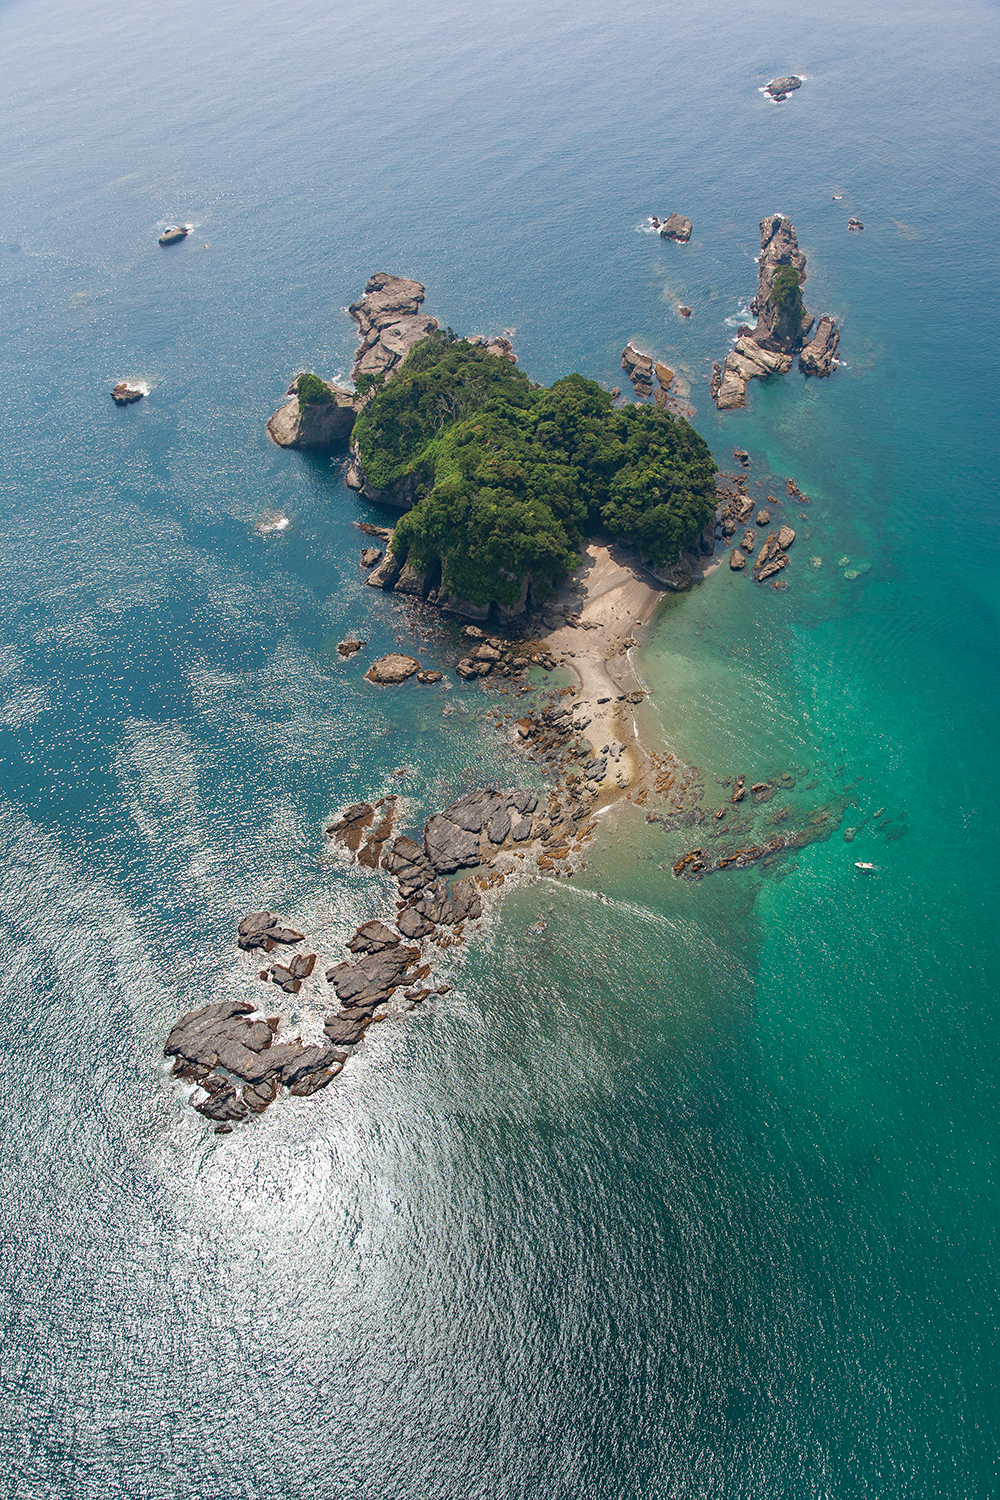 古座川河口からすぐの沖にある九龍島には、小さい島ながらも亜熱帯性植物が生い茂る。